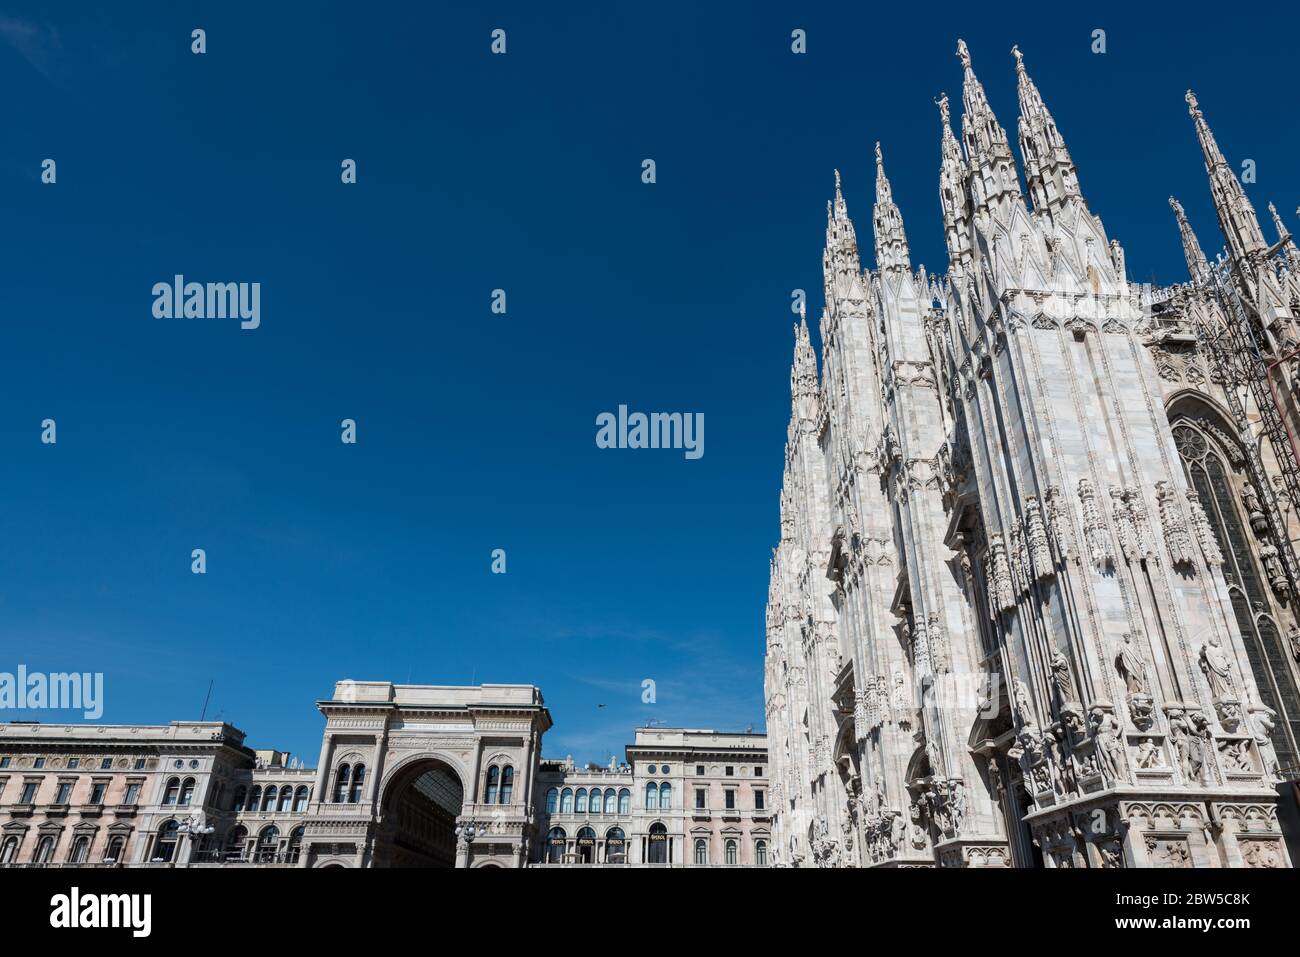 MILÁN, ITALIA - 16, MARZO de 2018: Imagen horizontal del Duomo di Milano y la Galería Vittorio Emanuele II en Milán, Italia. Foto de stock